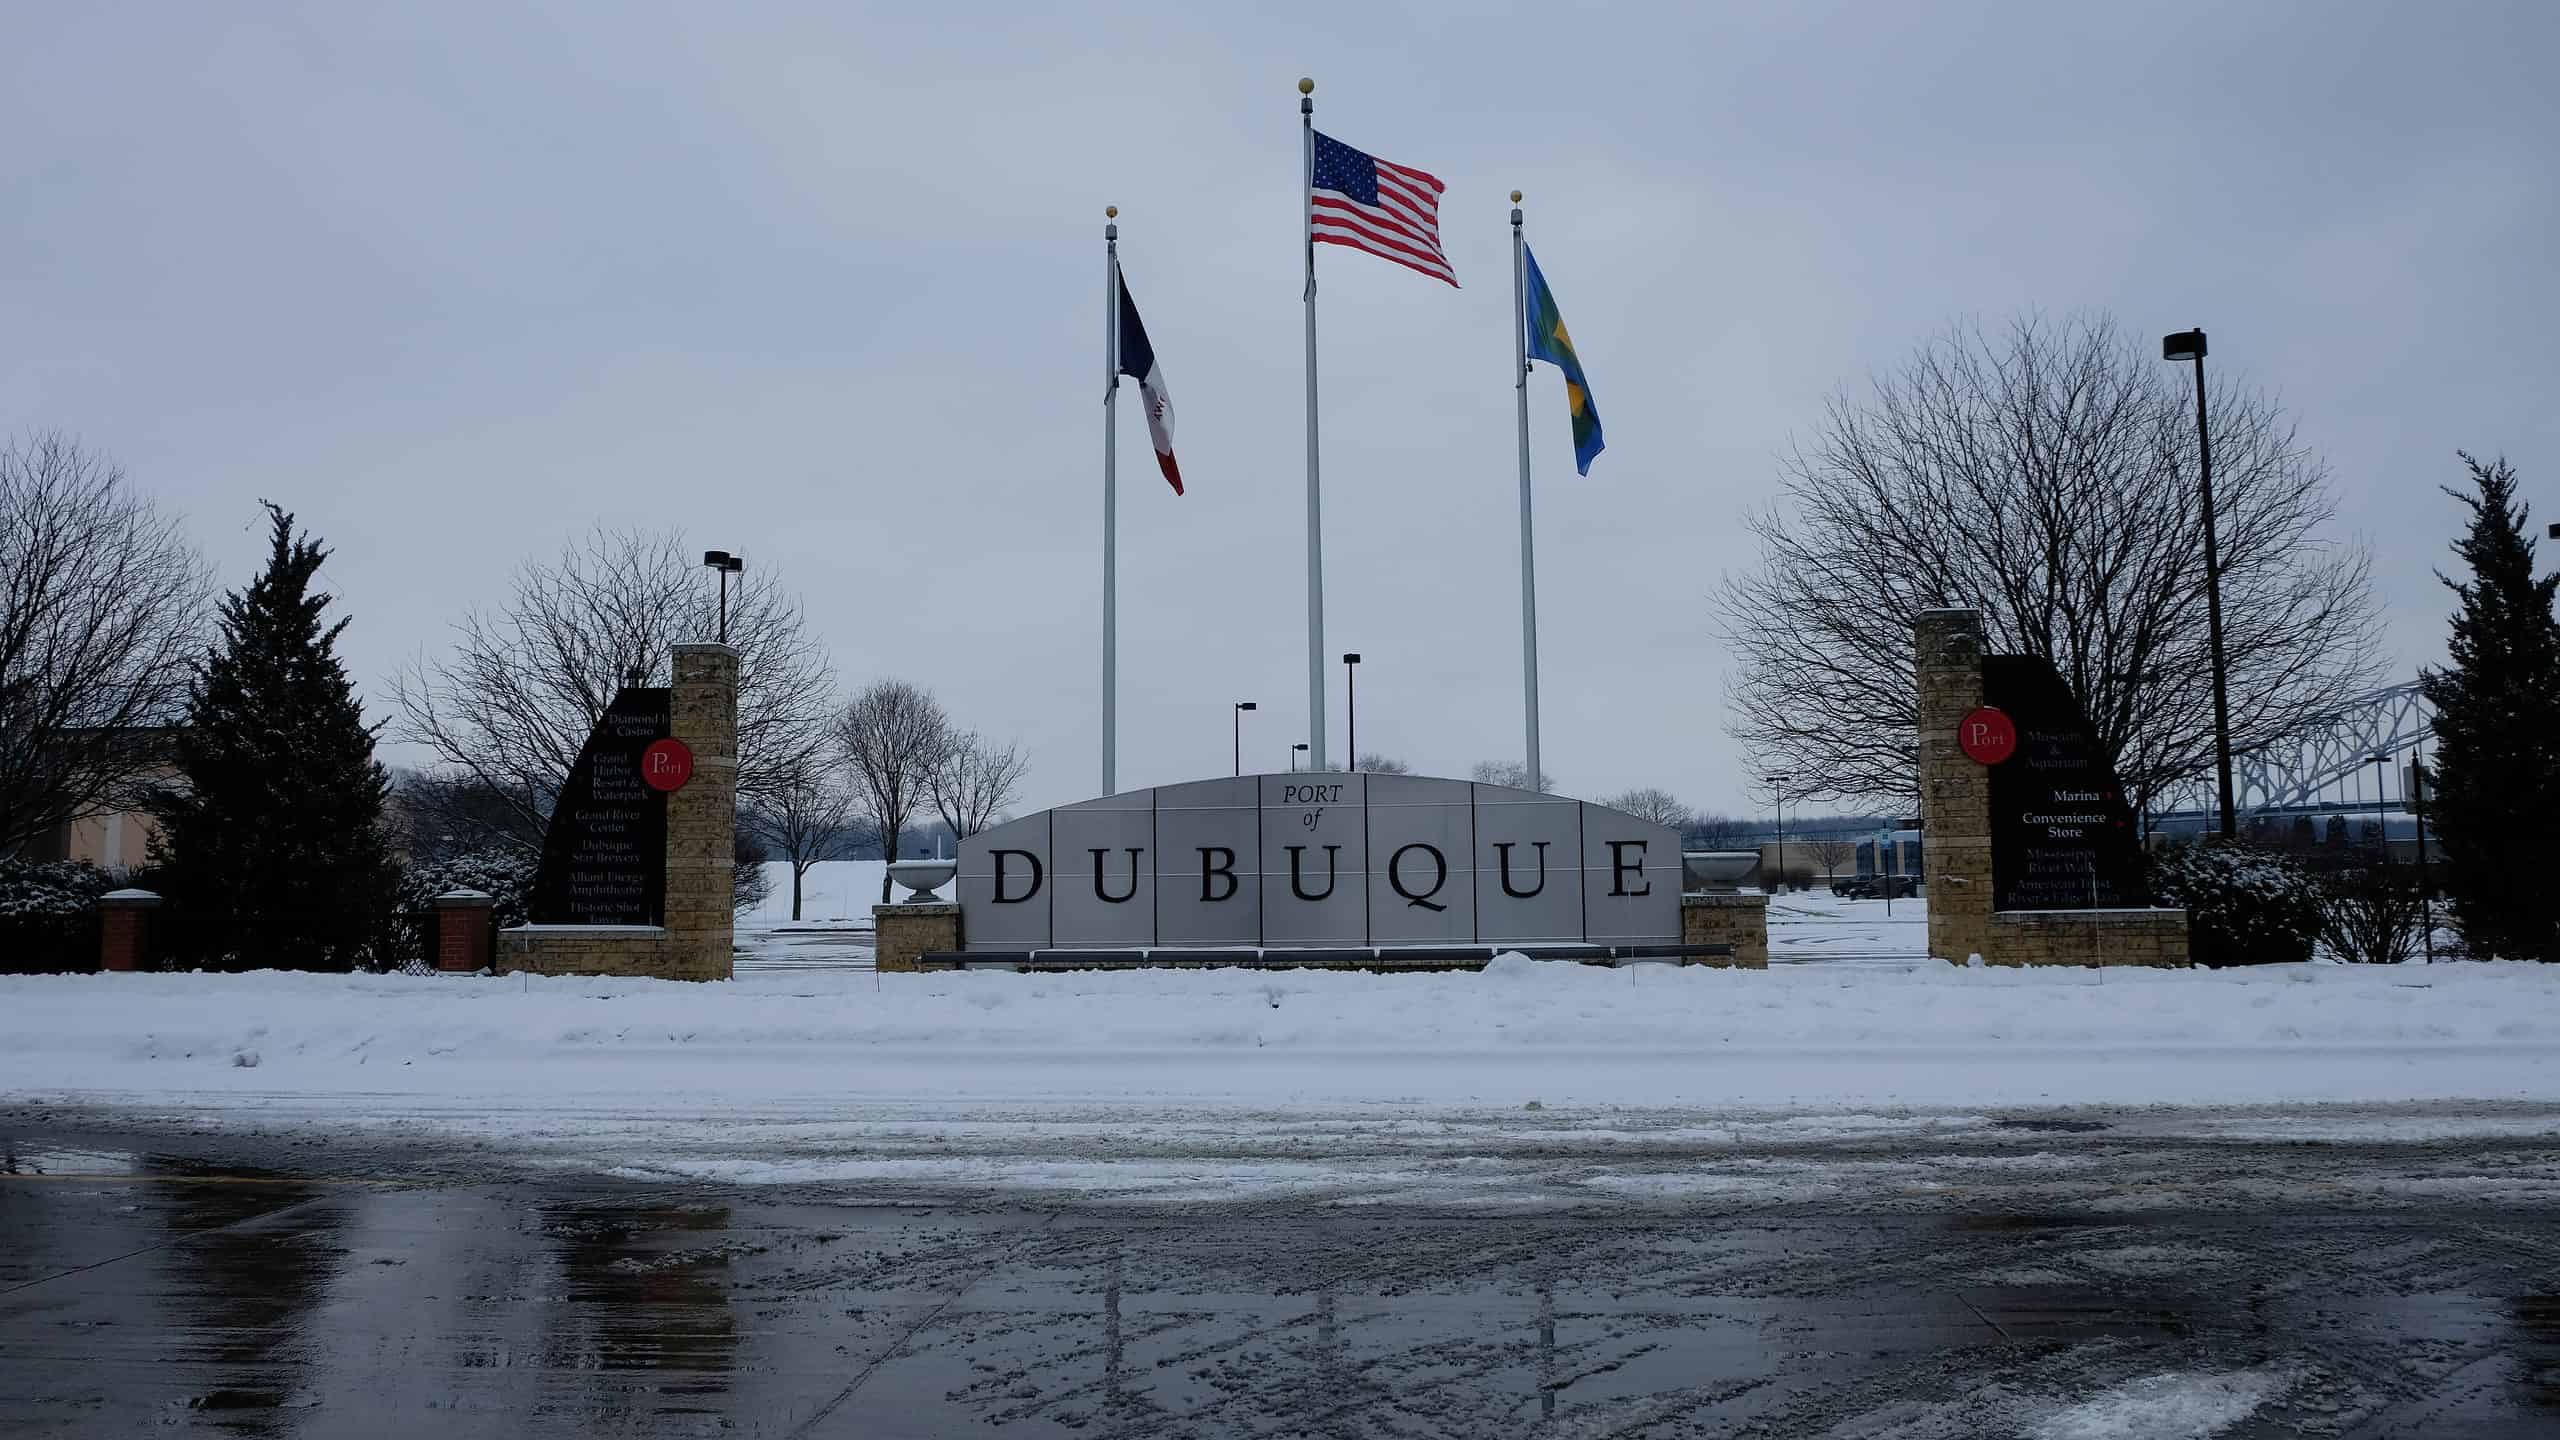 Dubuque Iowa sign